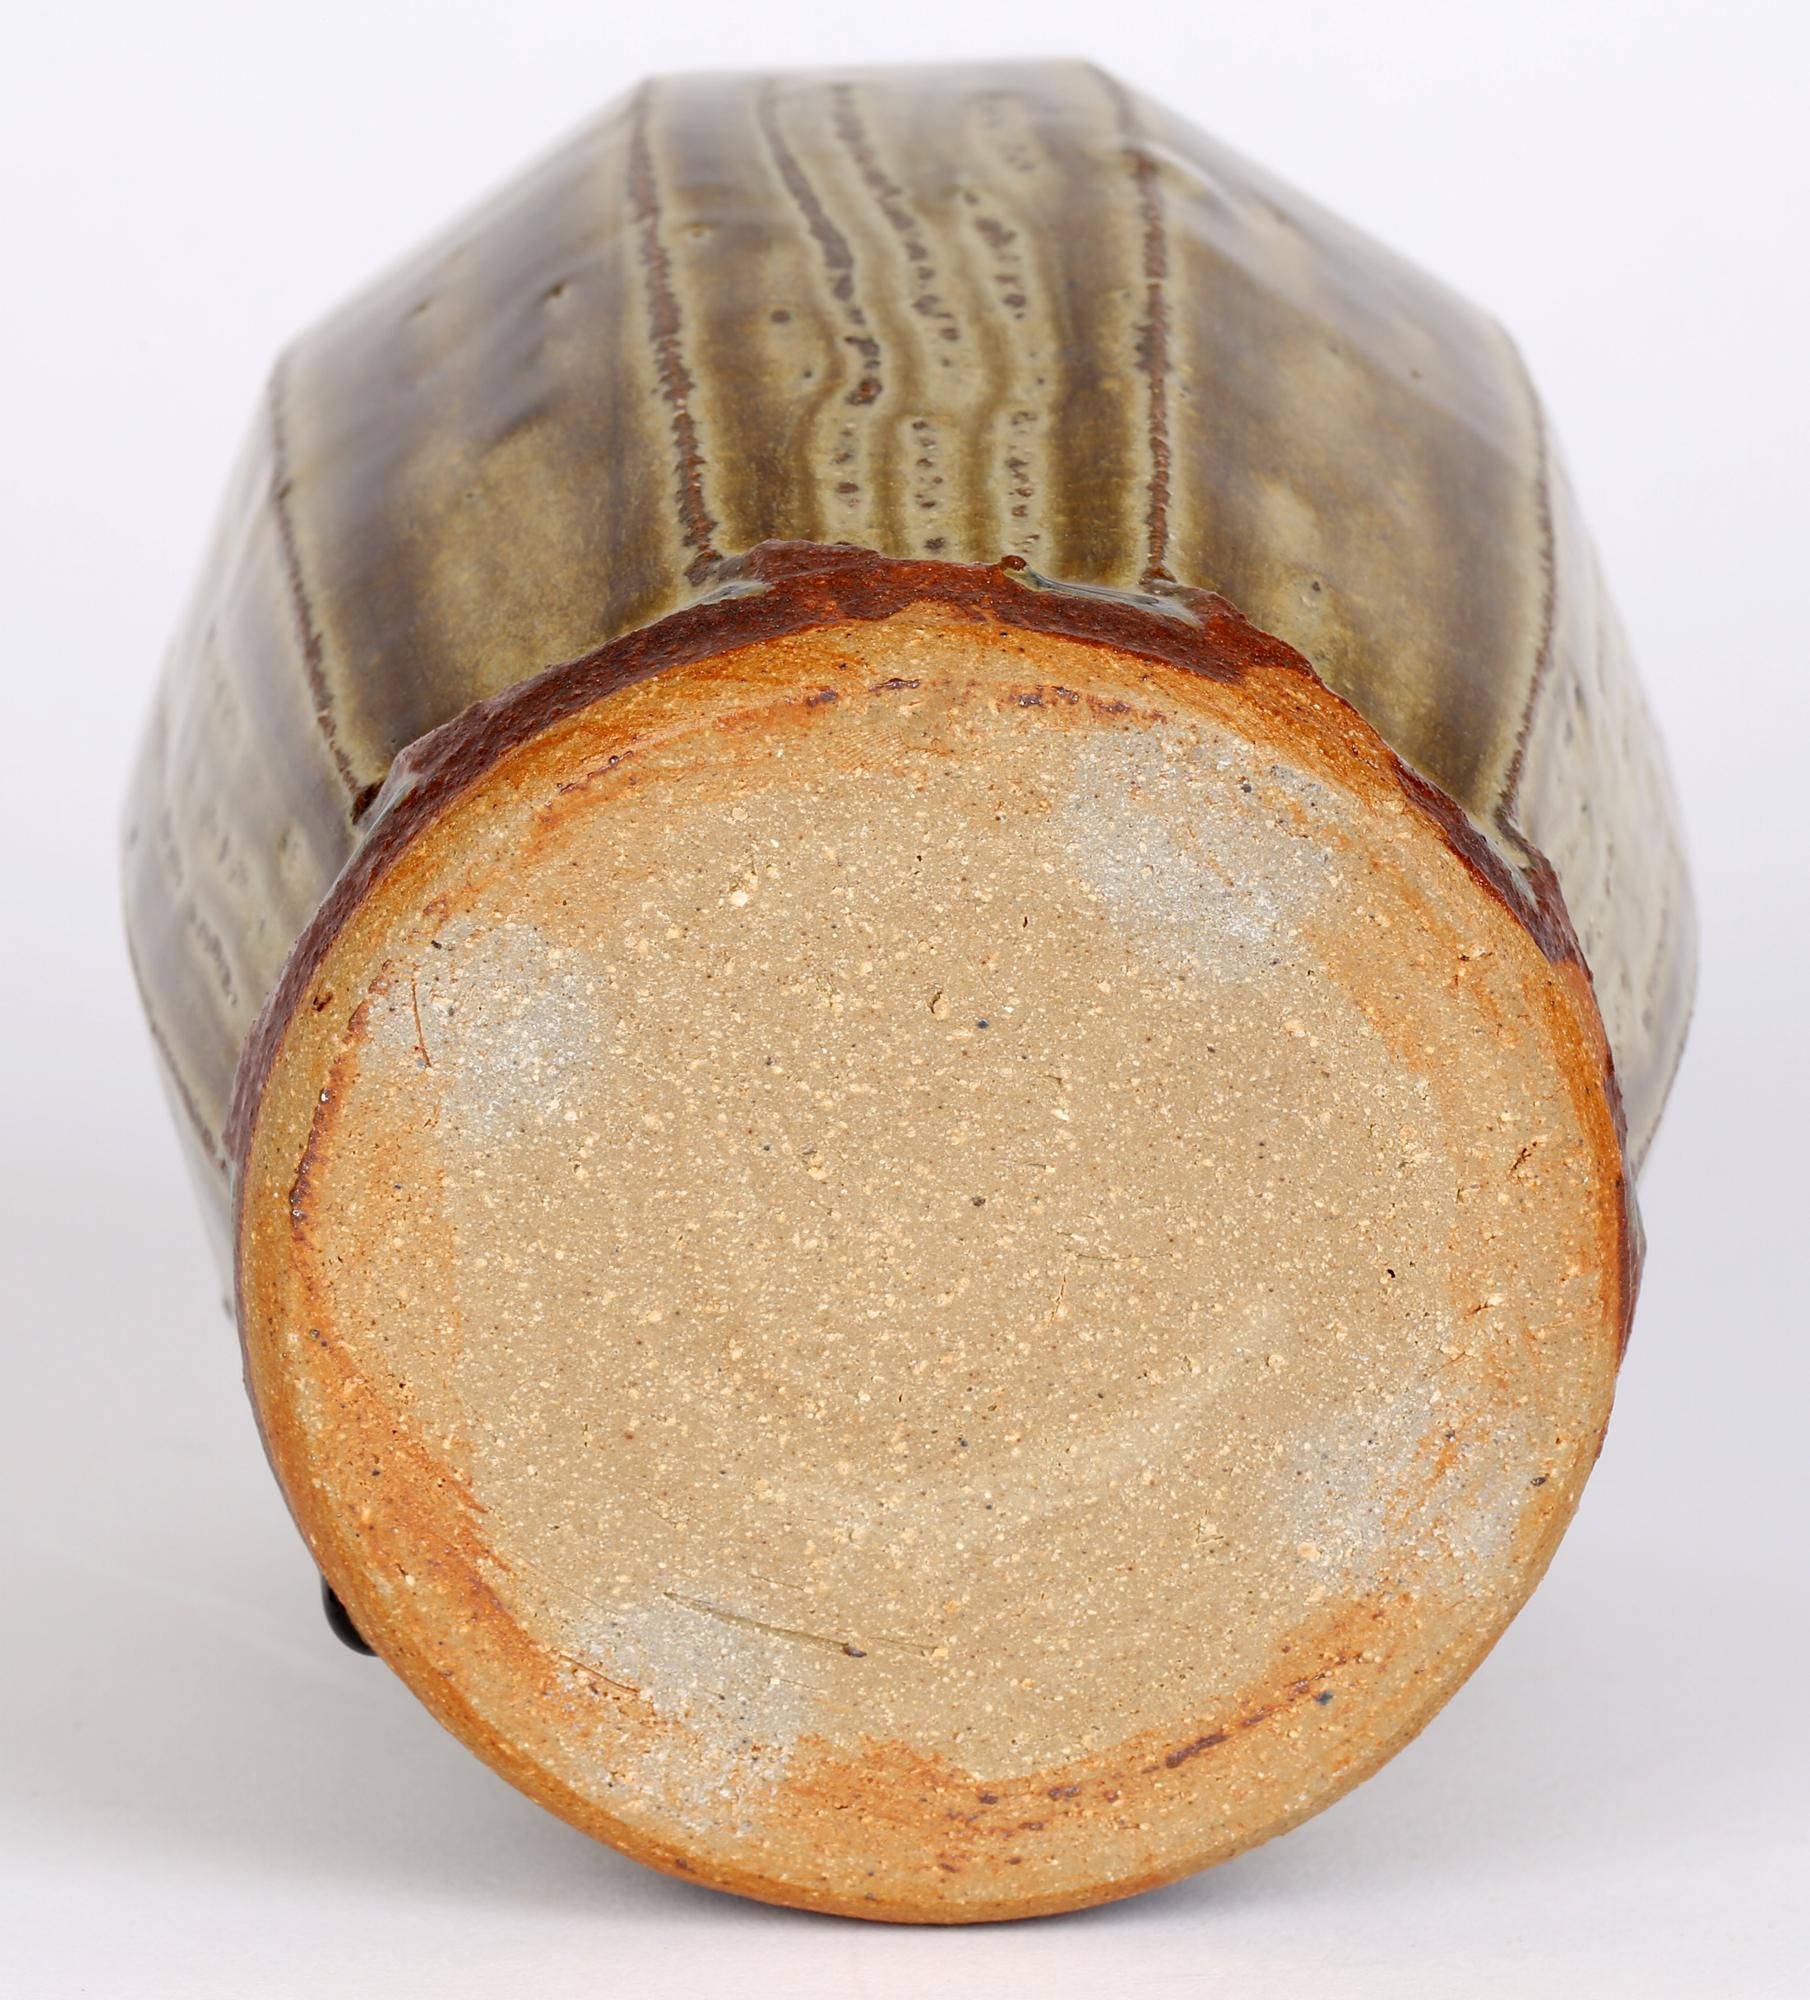 Mike Dodd (Britannique, né en 1943) Vase en poterie Studio au corps facetté et décoré de glaçures vertes traînées datant du 20e siècle. Le vase en grès repose sur un pied non émaillé, avec une finition en bord de couteau au bas de chaque facette,